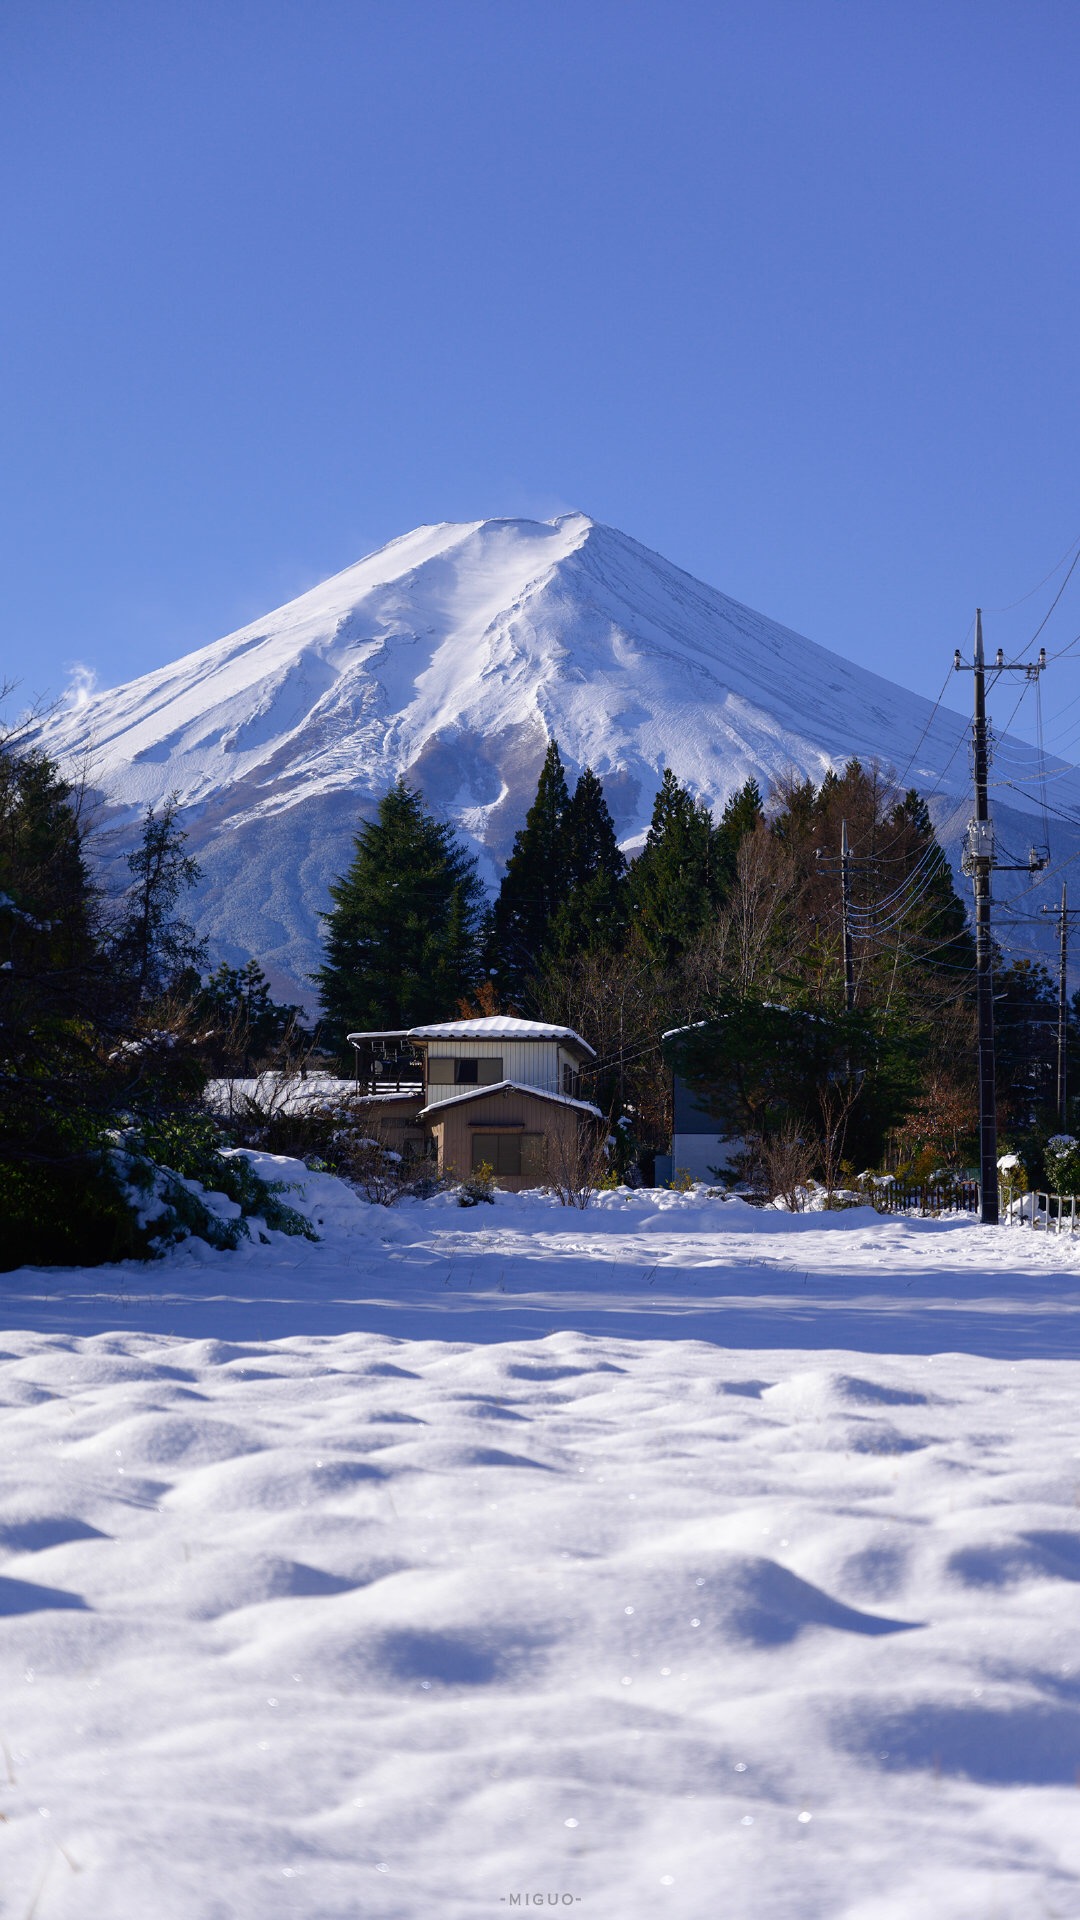 冬日富士山来自@清新小镇 的分享 by@米果mig